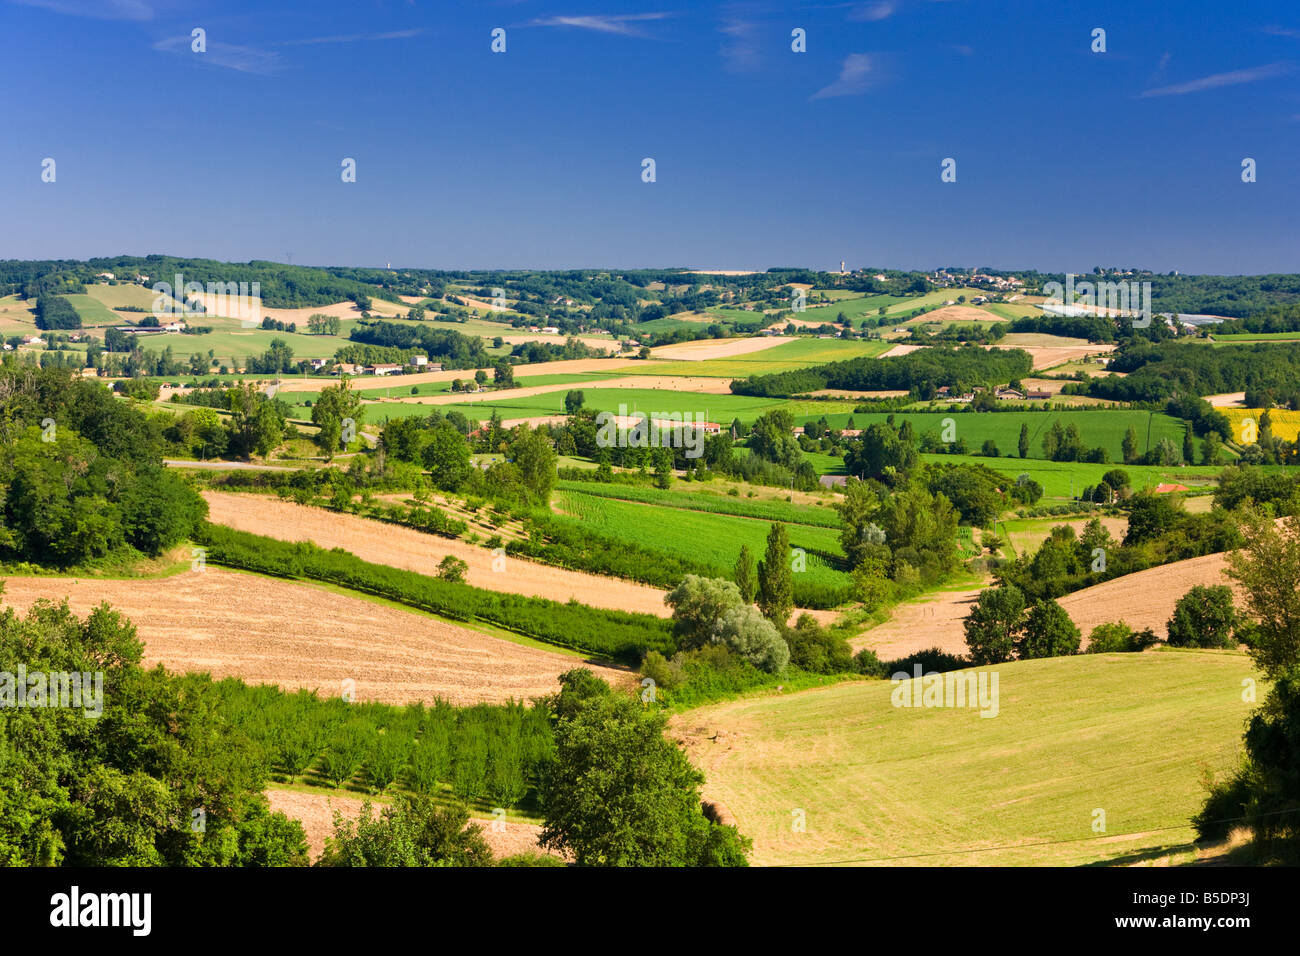 Le paysage du Tarn et Garonne, France l'Europe en été Banque D'Images